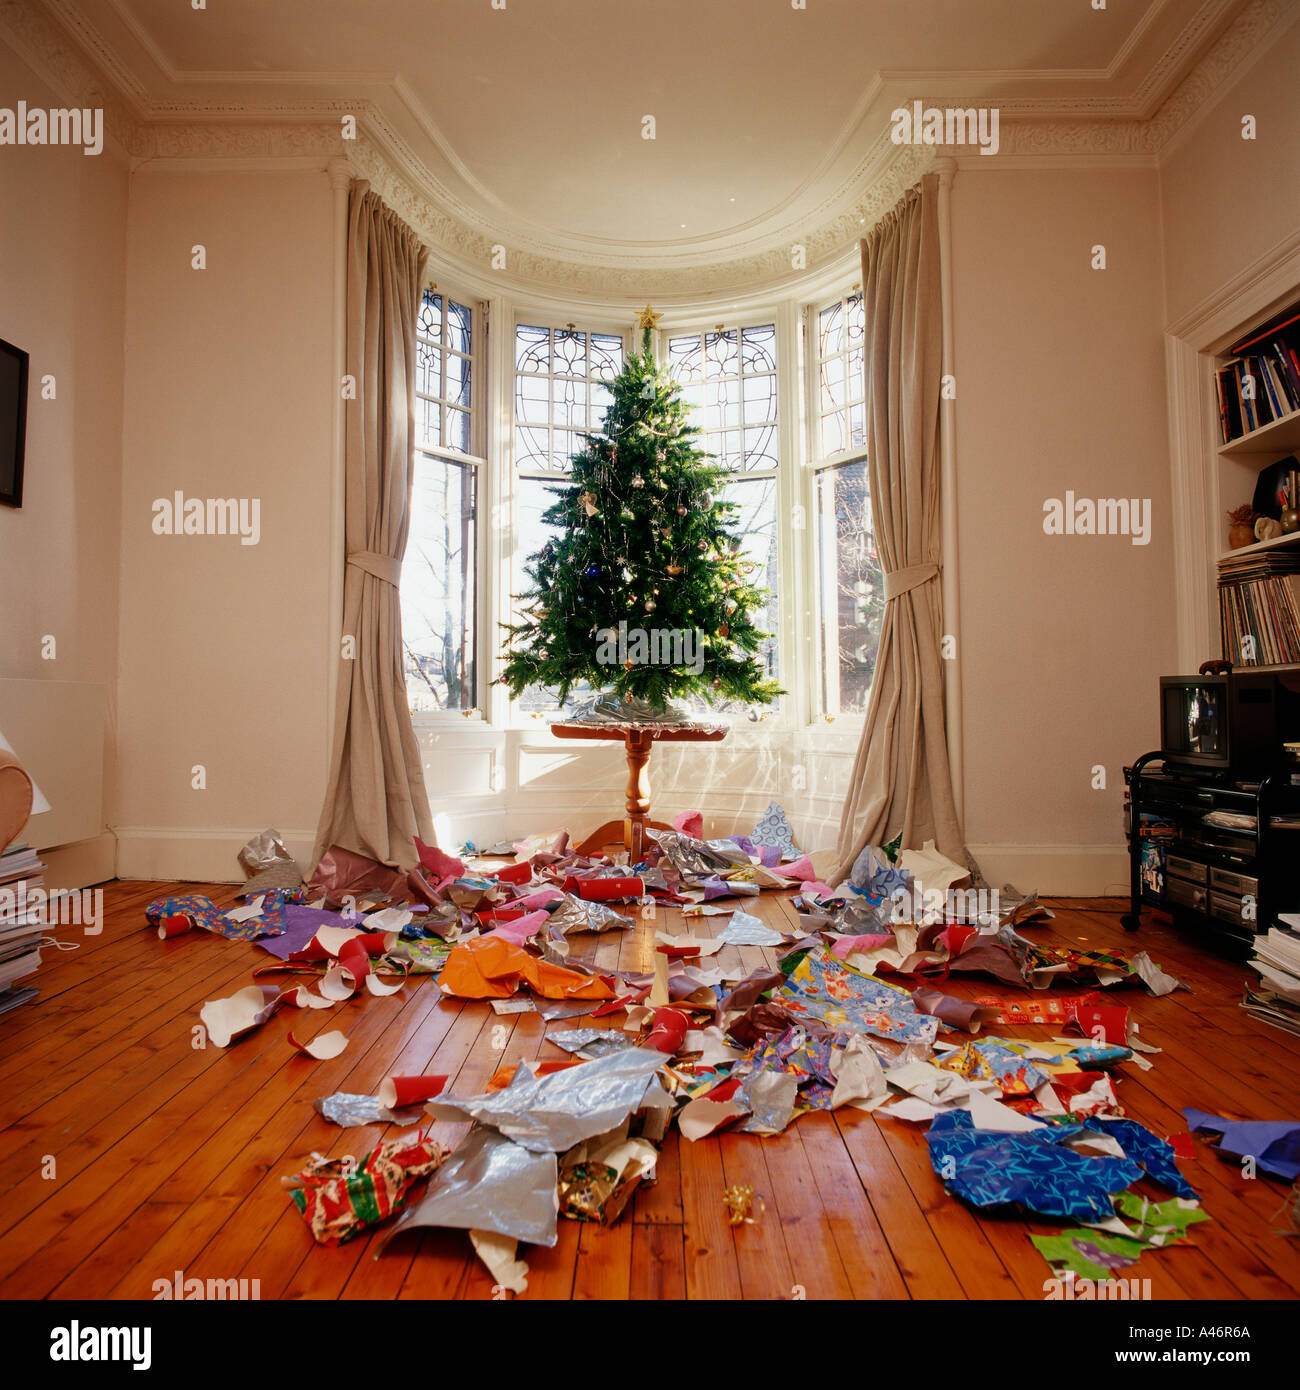 Unordentliche Wohnzimmer an Weihnachten Stockfoto